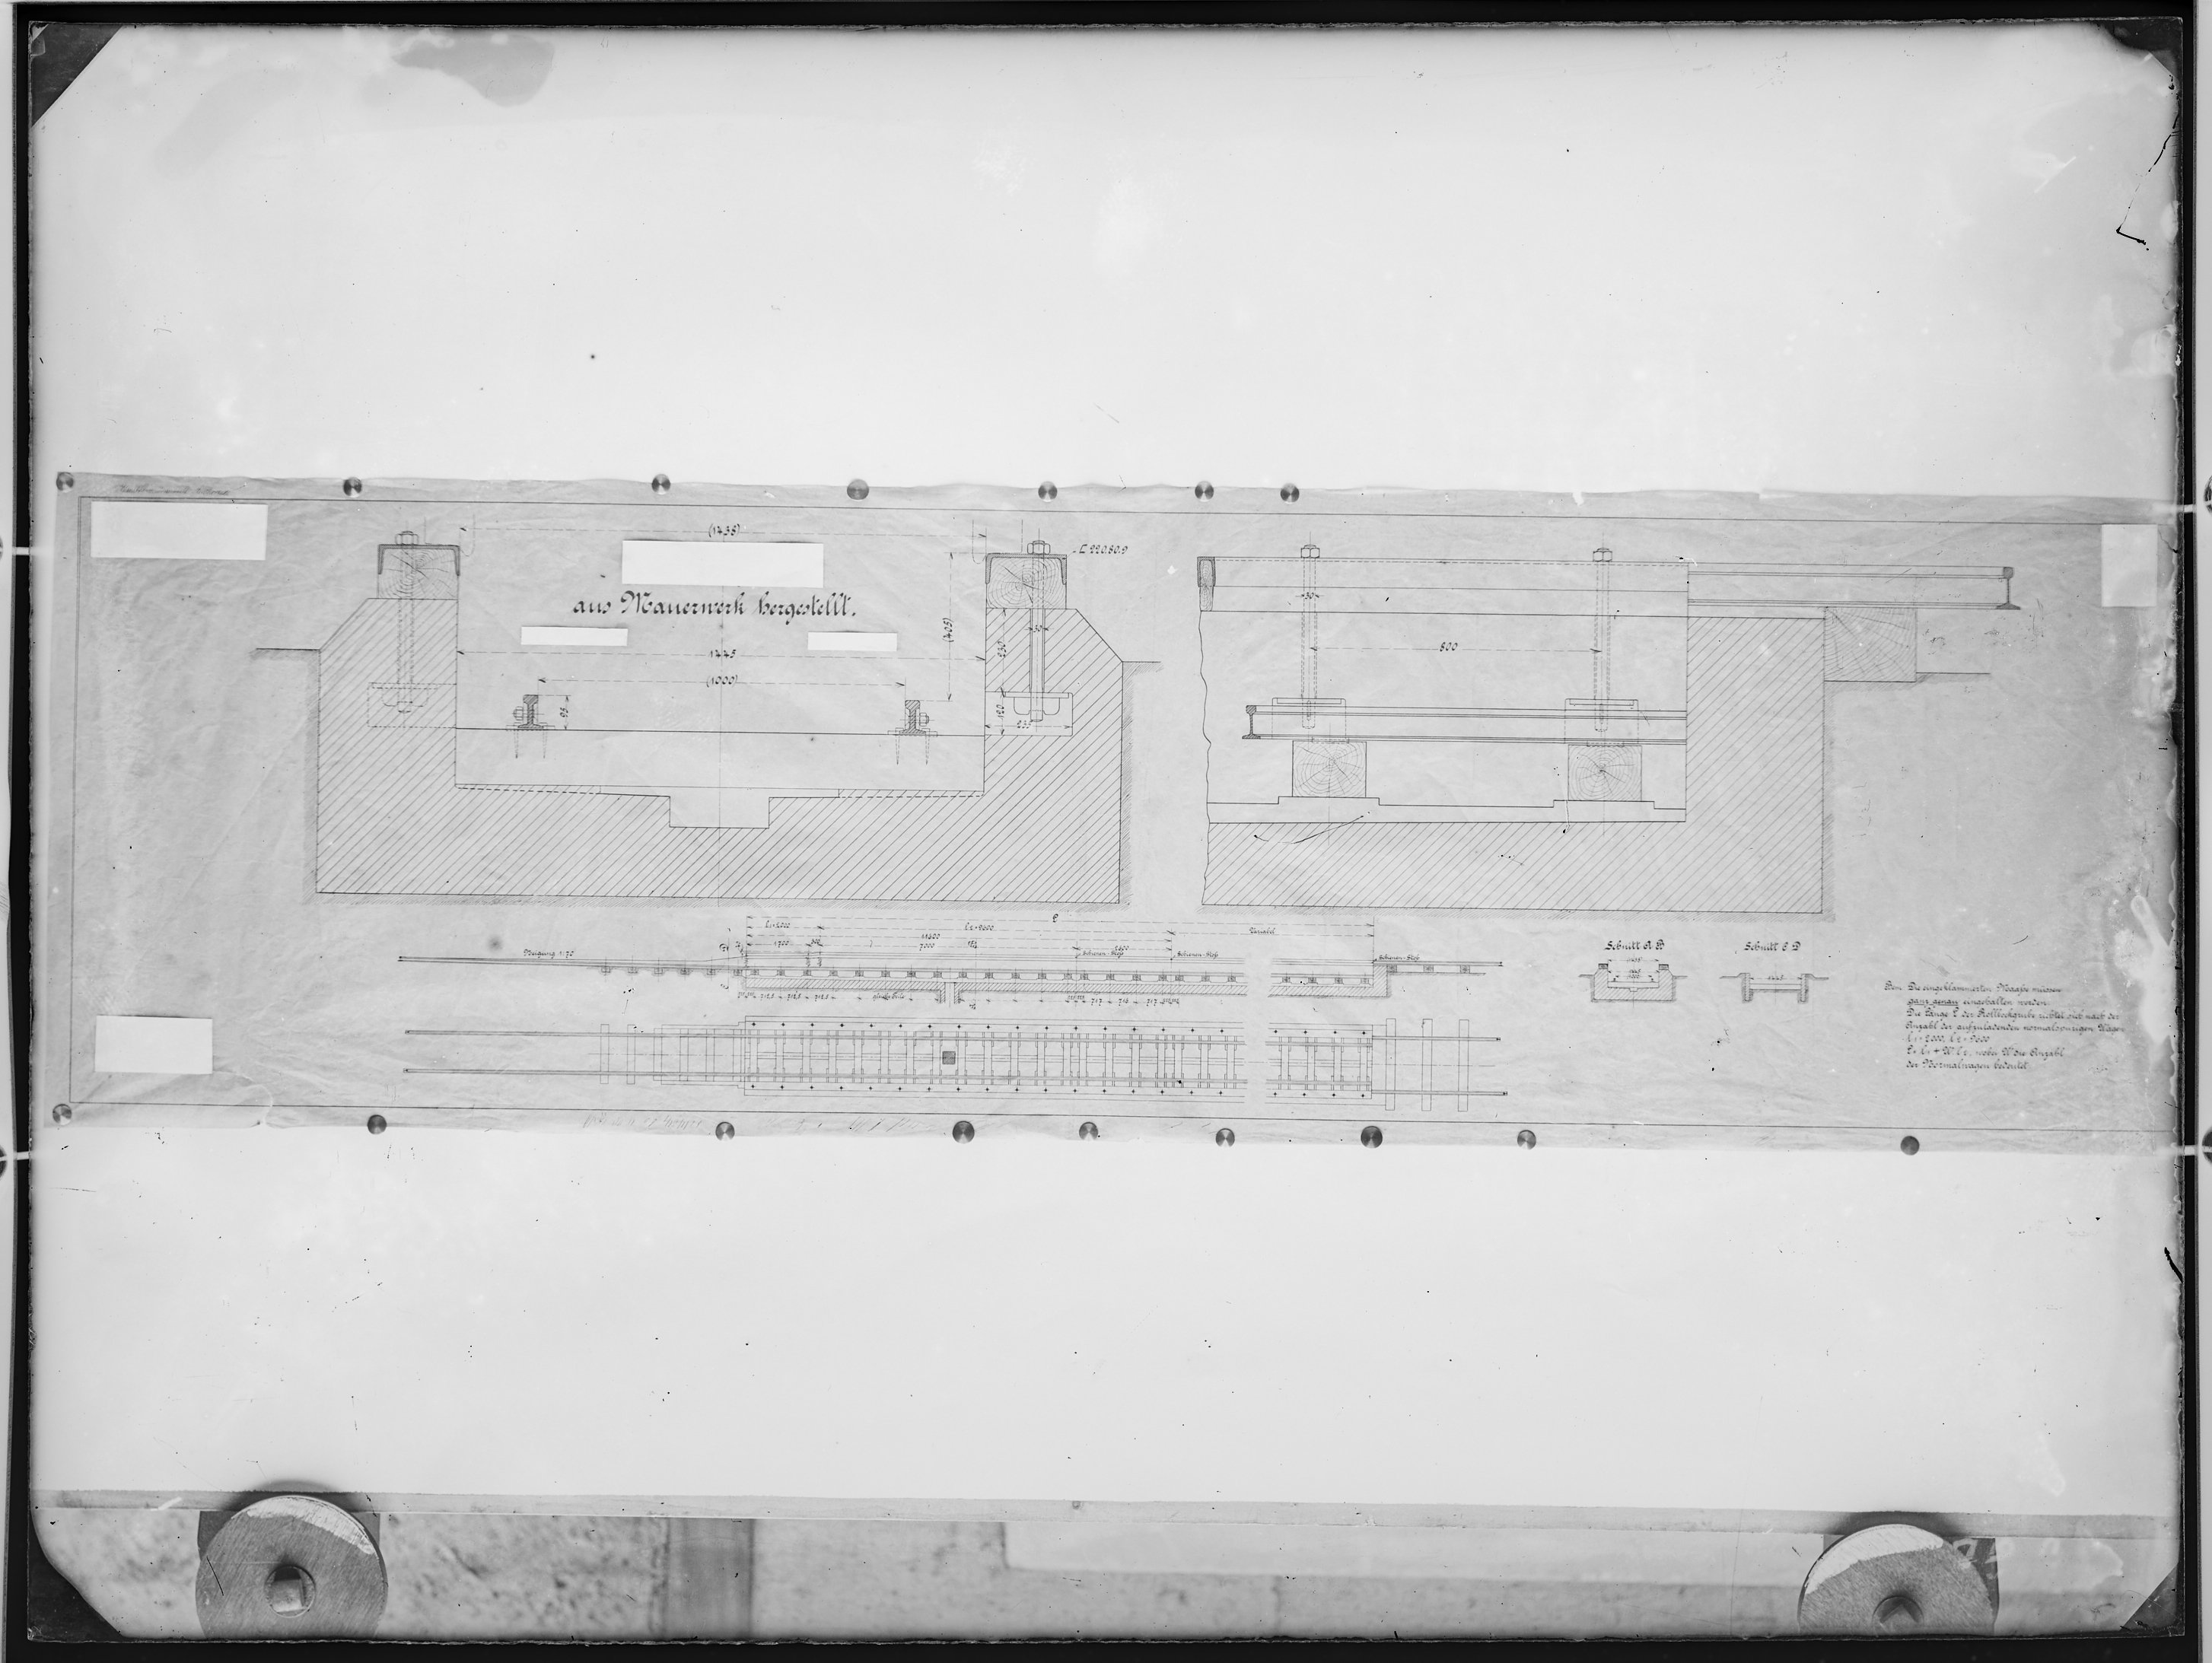 Fotografie: Maßzeichnung unbekannter Herkunft für eine Rollbockgrube, um 1905? (Verkehrsmuseum Dresden CC BY-NC-SA)